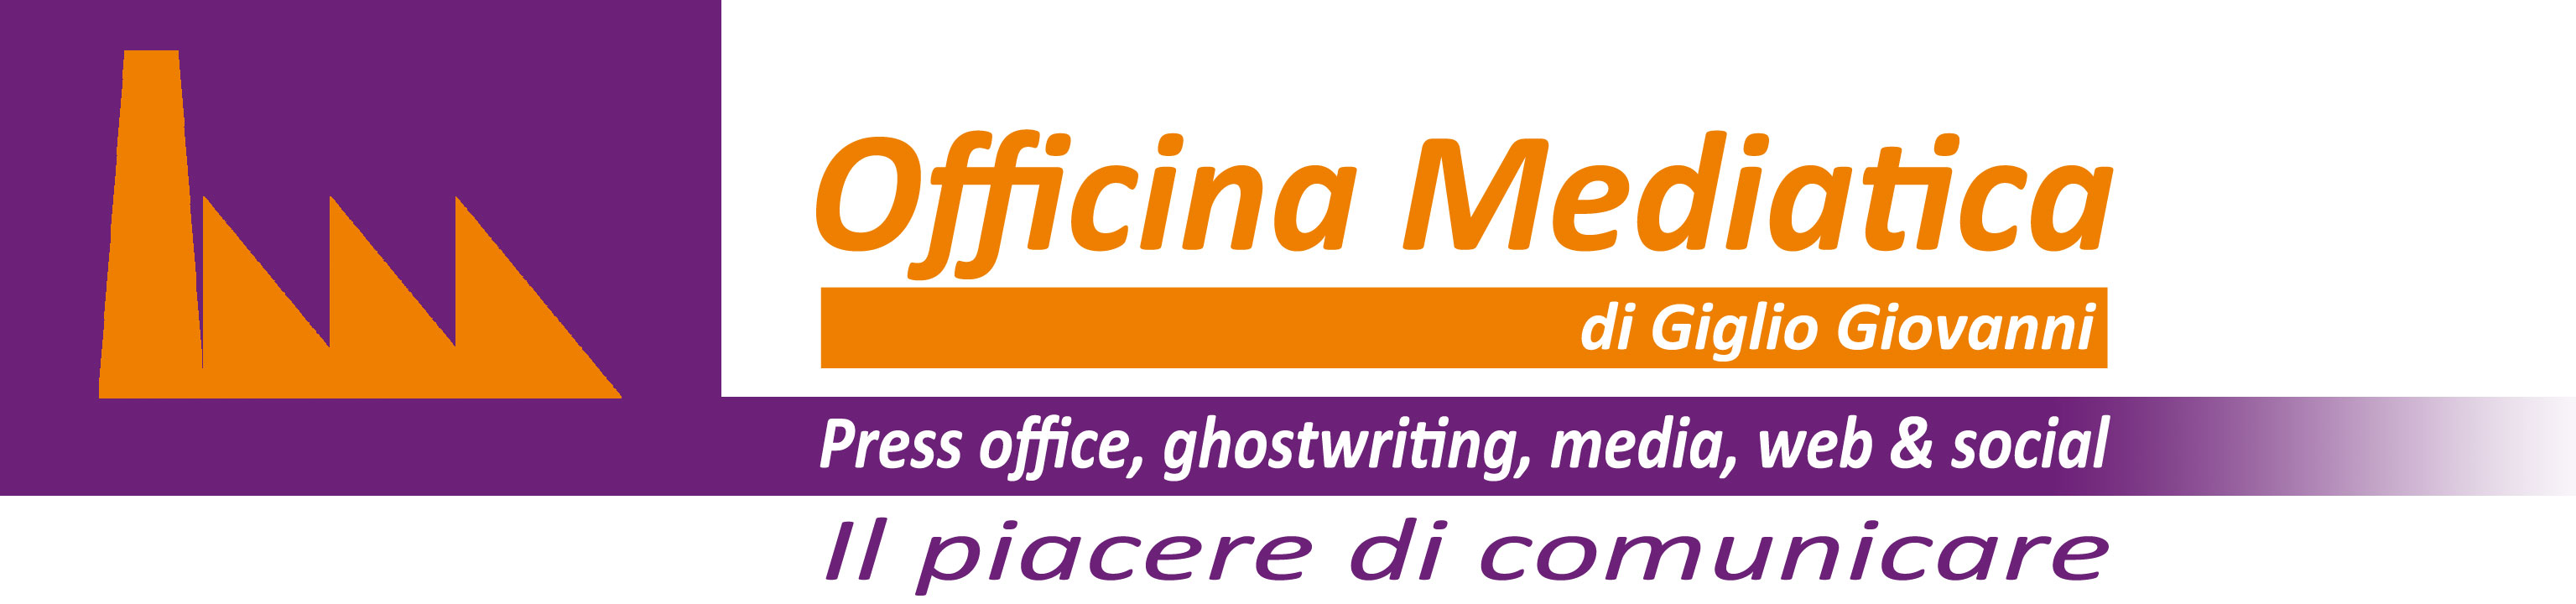 Officina Mediatica